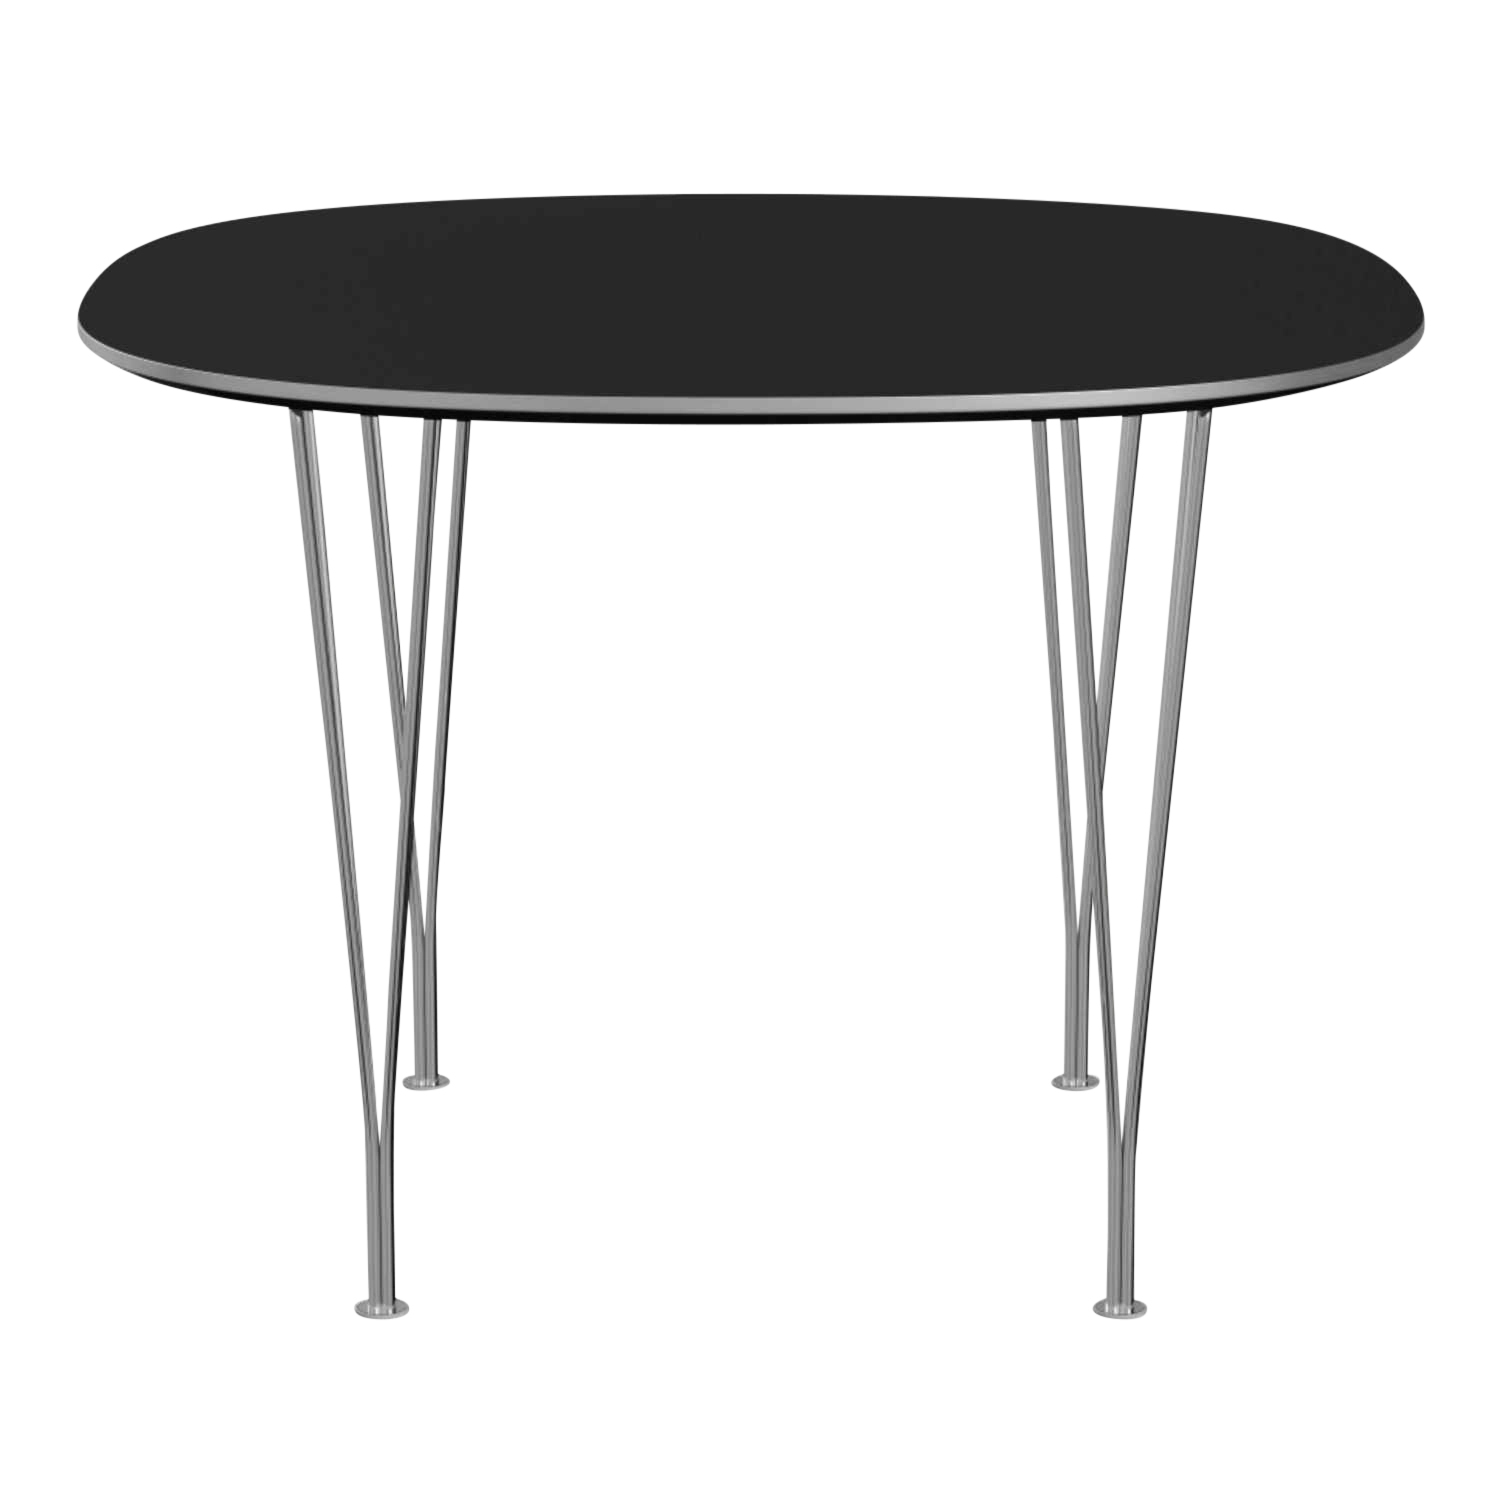 SUPERCIRCULAR Esstisch, Tischplatte laminat, braun ottowa m. kante aluminium, Gestell schwarz pulverbeschichtet von Fritz Hansen